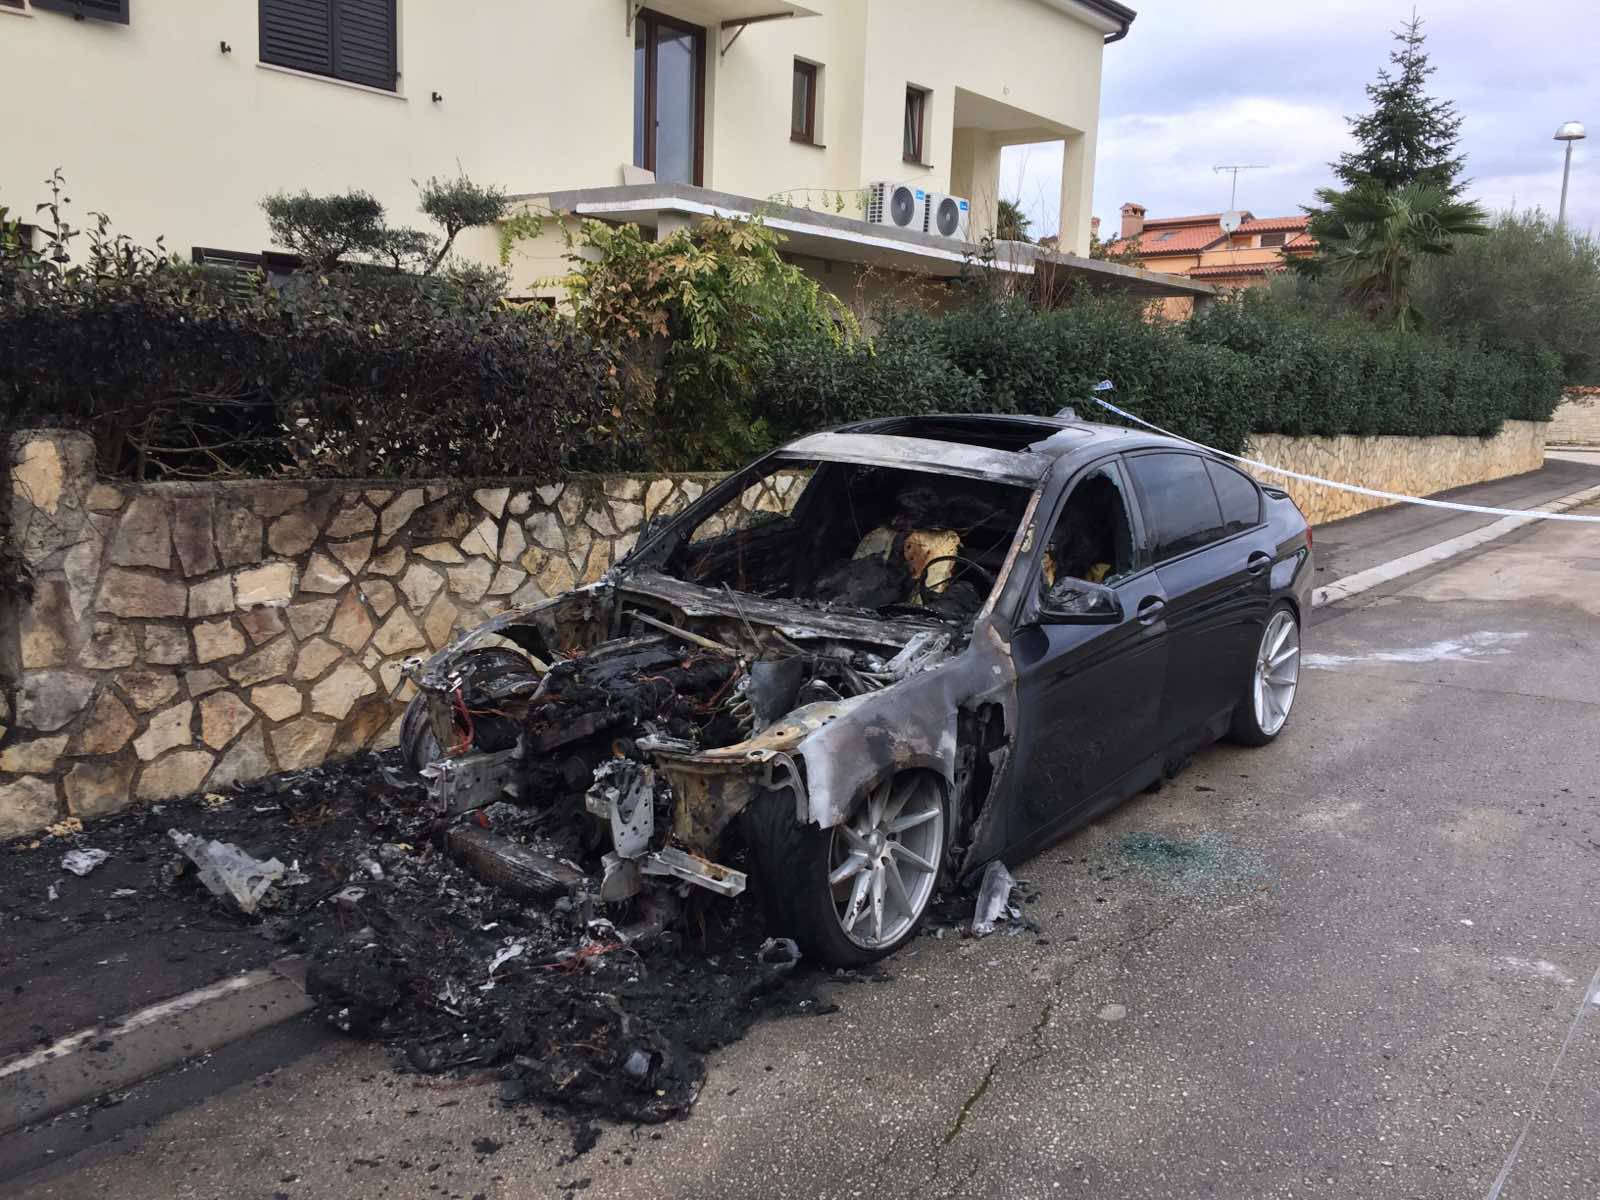 'Nudim 50.000 eura, dajte mi informaciju tko je zapalio aute'